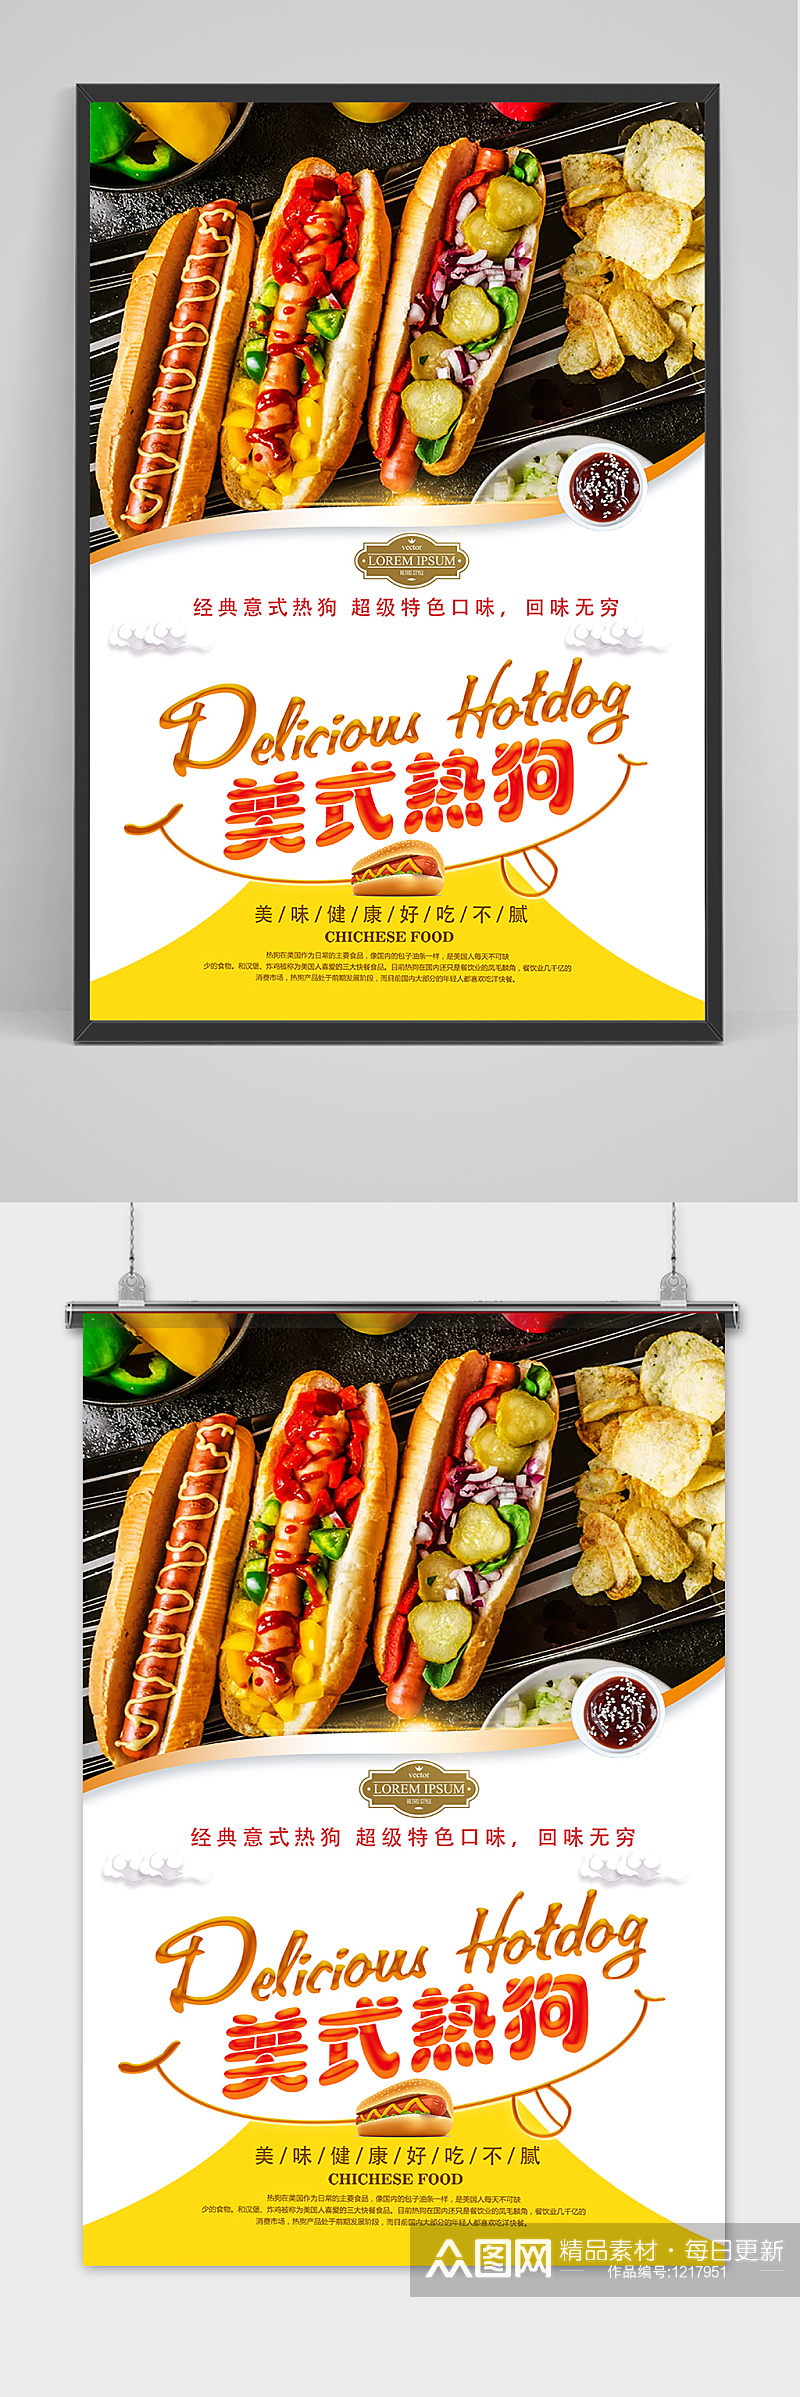 香辣热狗餐饮海报设计素材